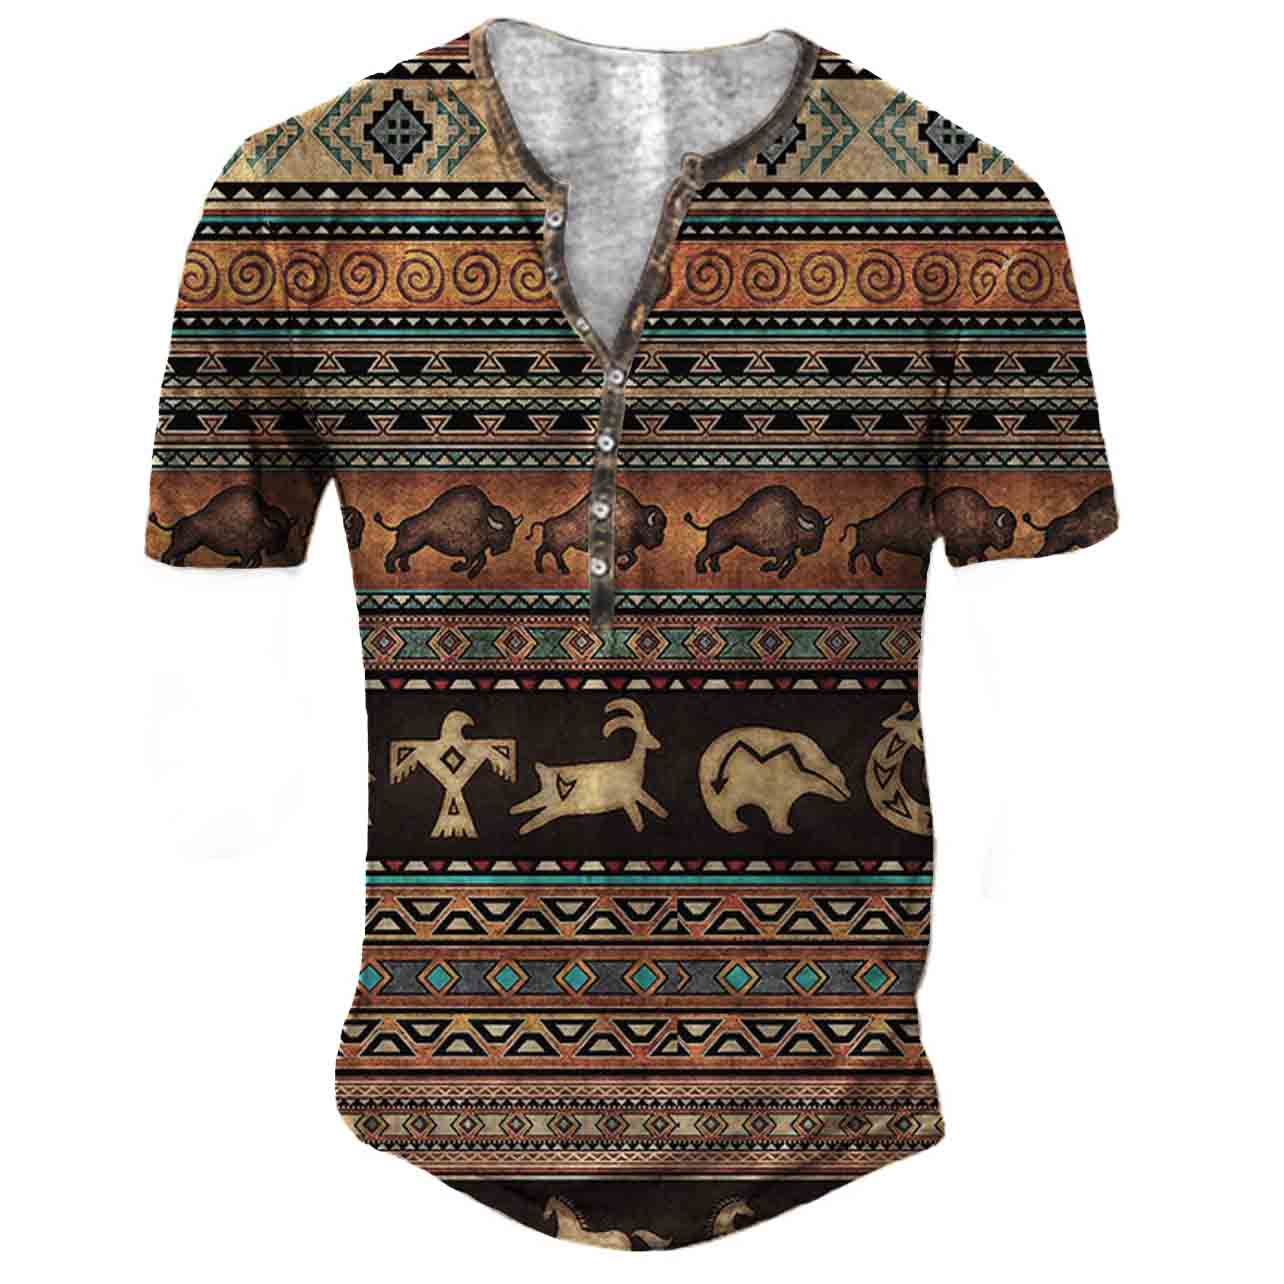 Men's Outdoor Vintage Western Chic Aztec Print Henley T-shirt